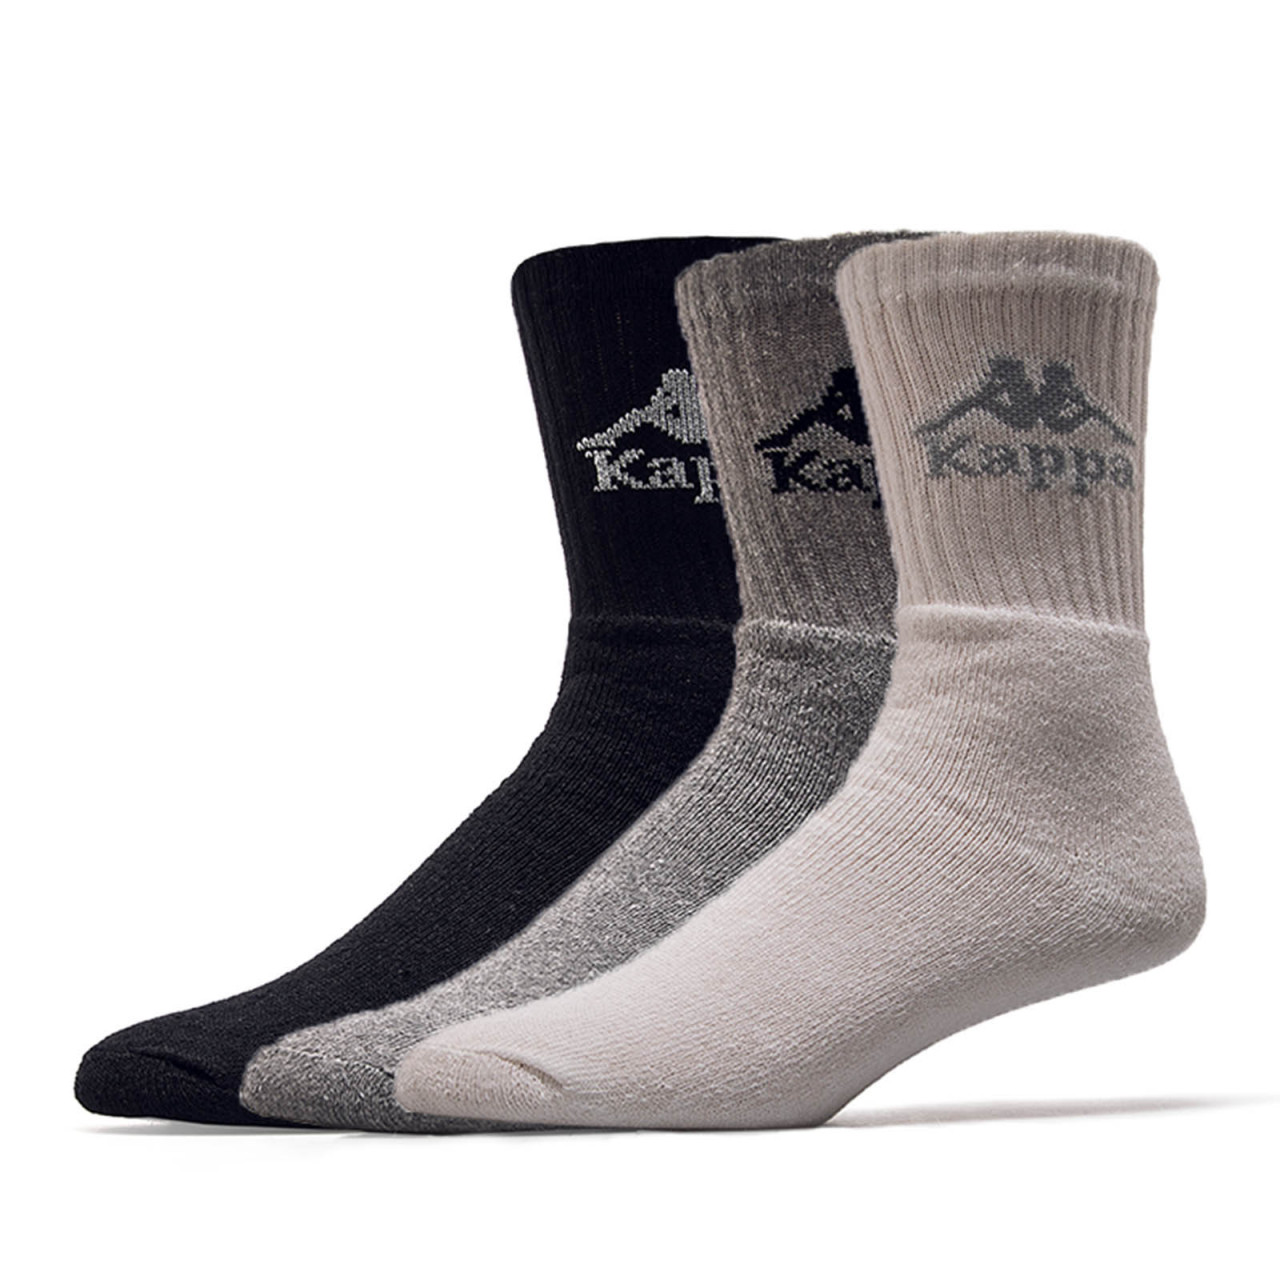 Kappa Socks 3 Pack Australien BlackWhite